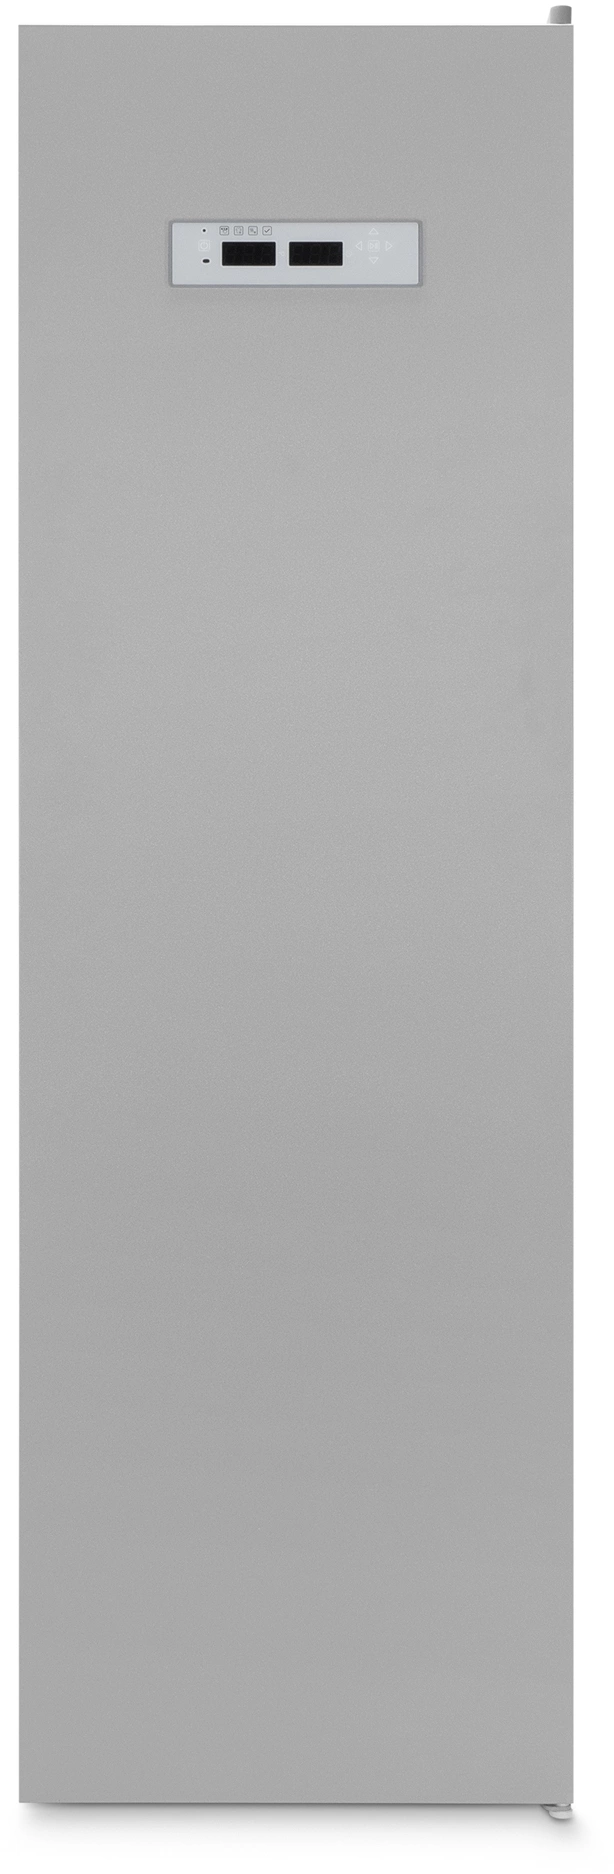 Сушильный шкаф Hyundai HDC-1835D кл.энер.:A макс.загр.:10кг серый